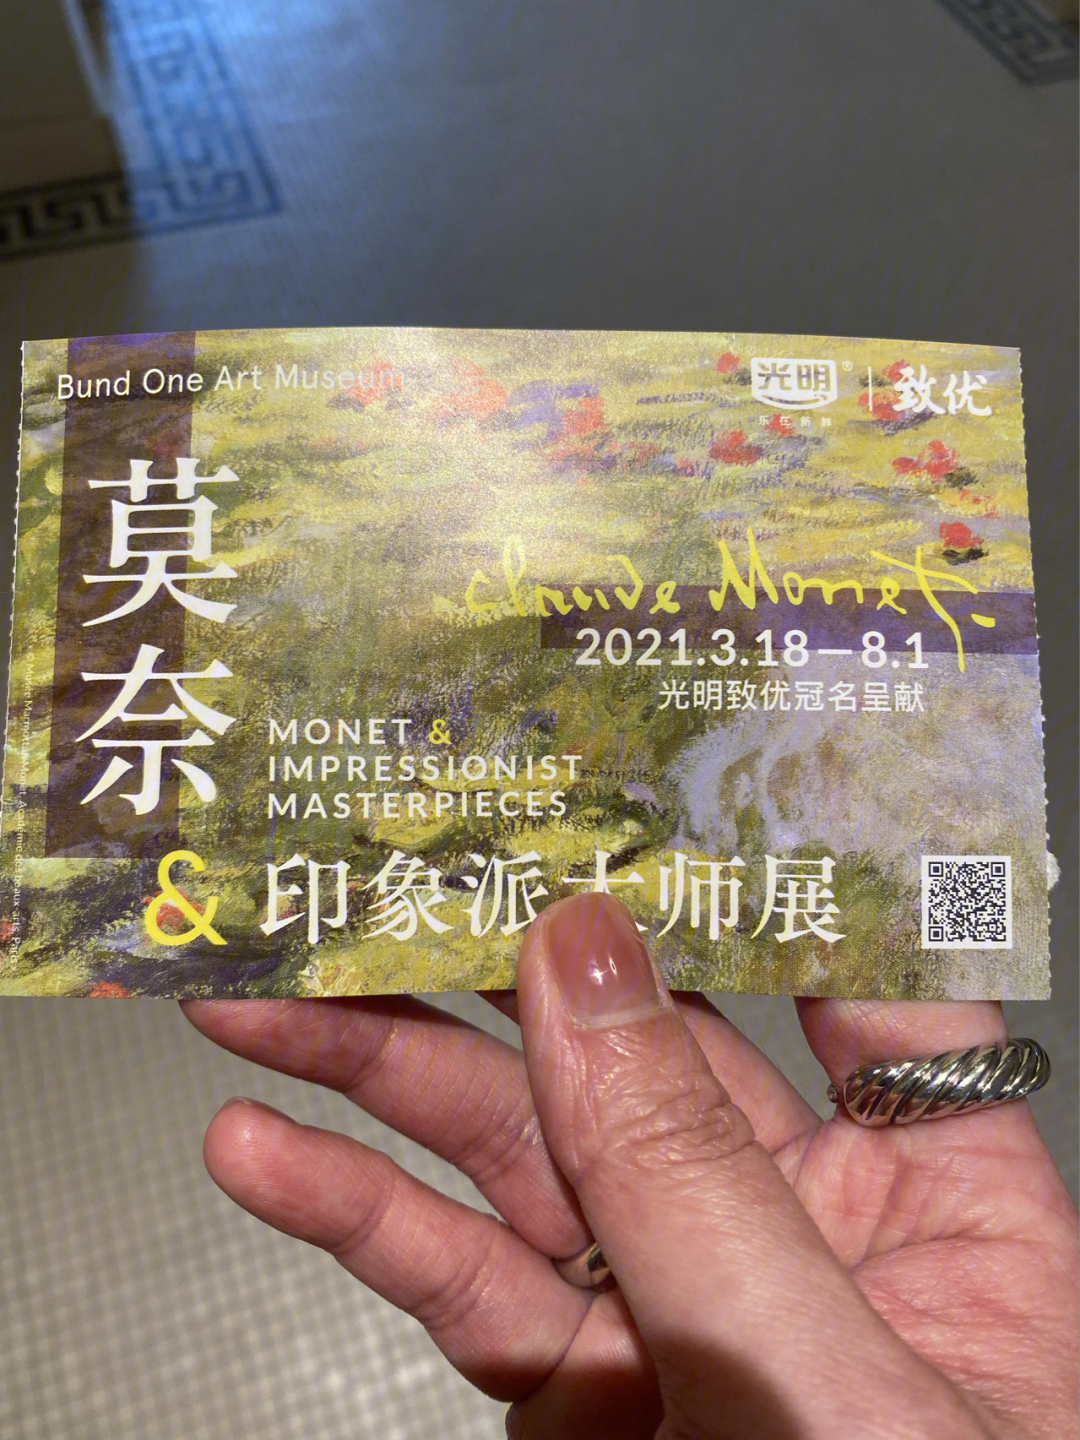 上海莫奈展门票图片